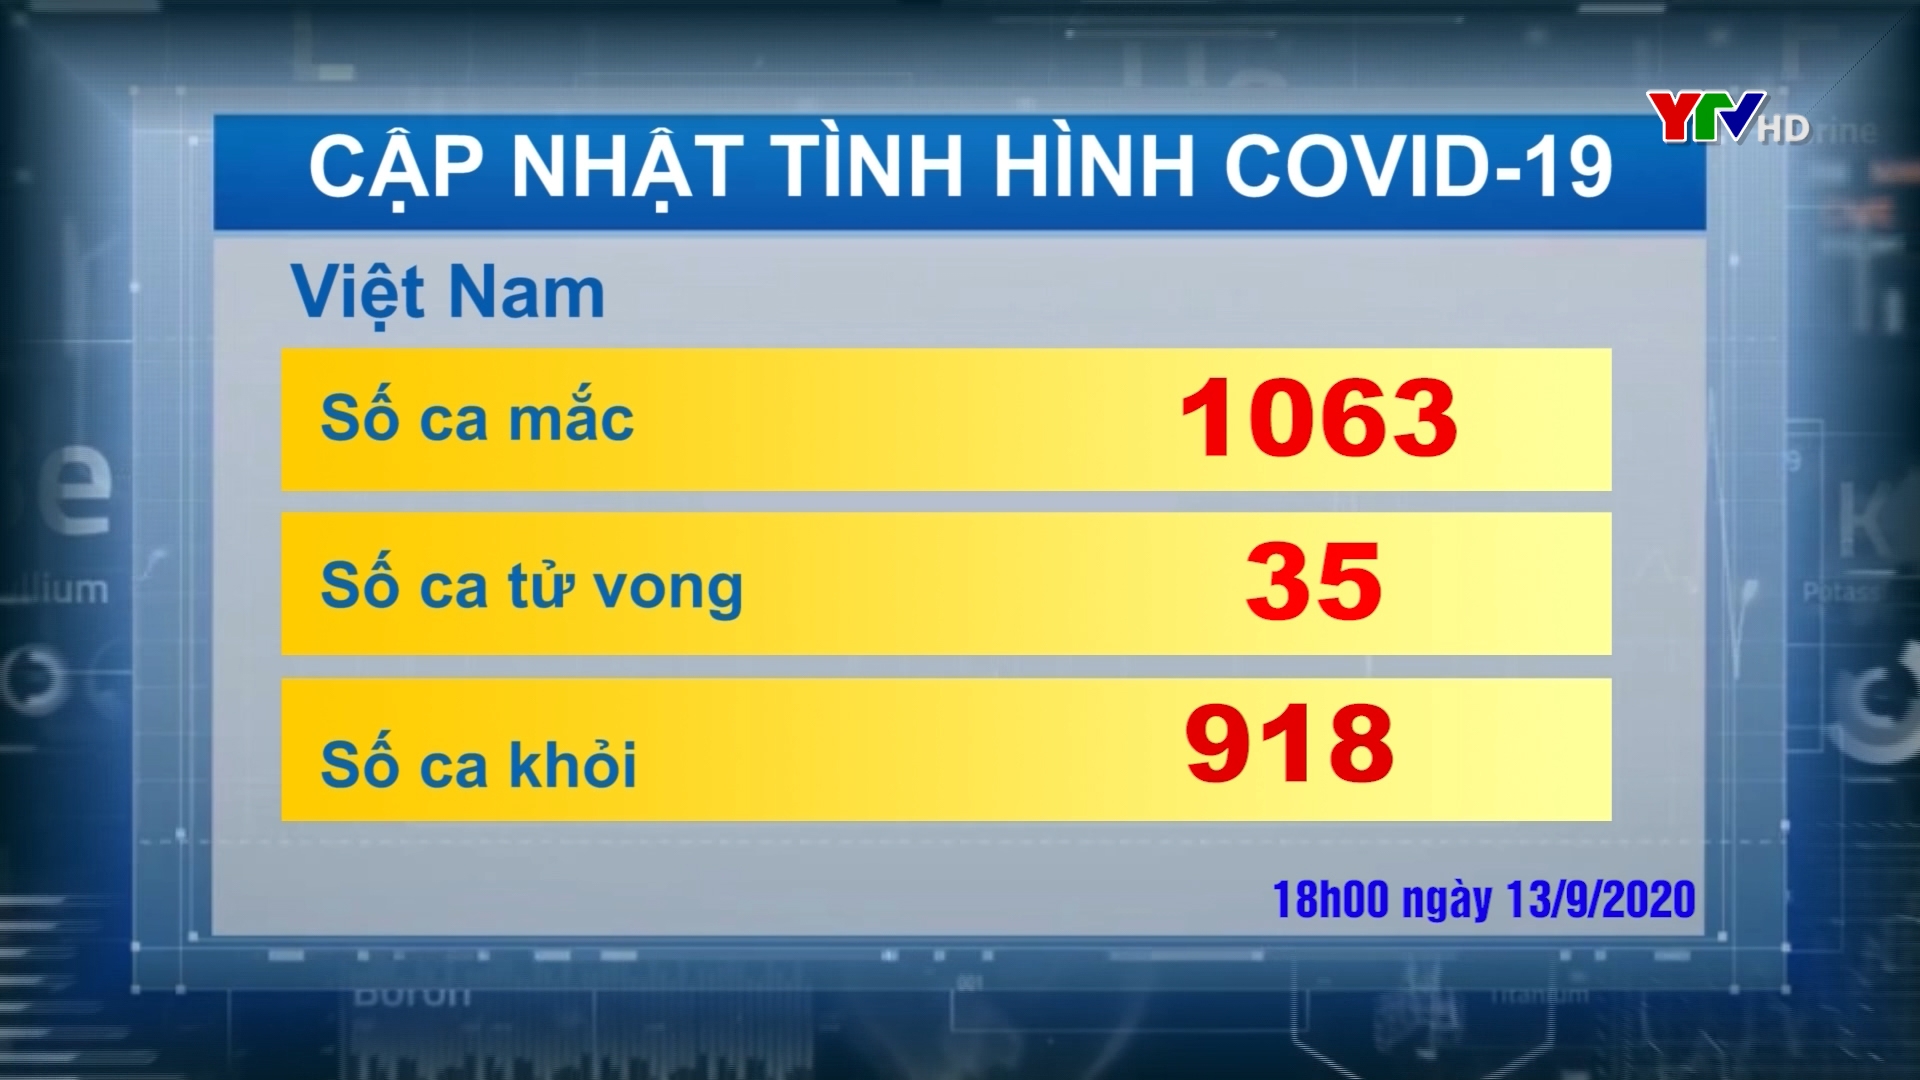 Việt Nam có 1063 ca nhiễm COVID - 19